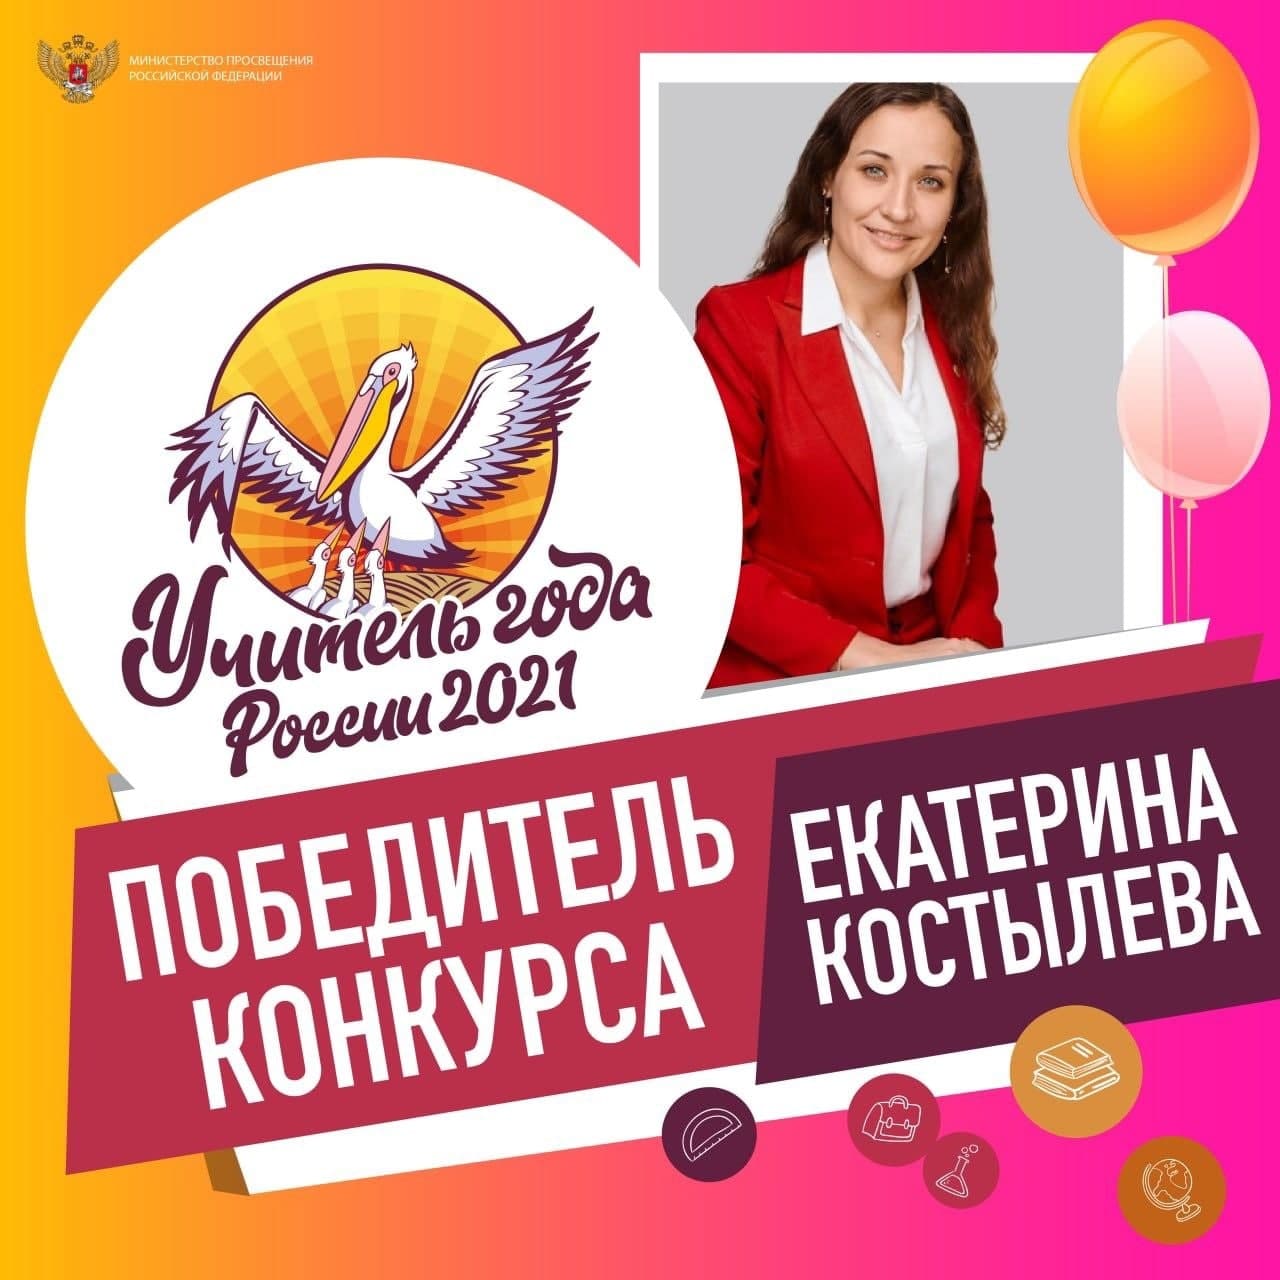 Учитель года Екатерина Костылева